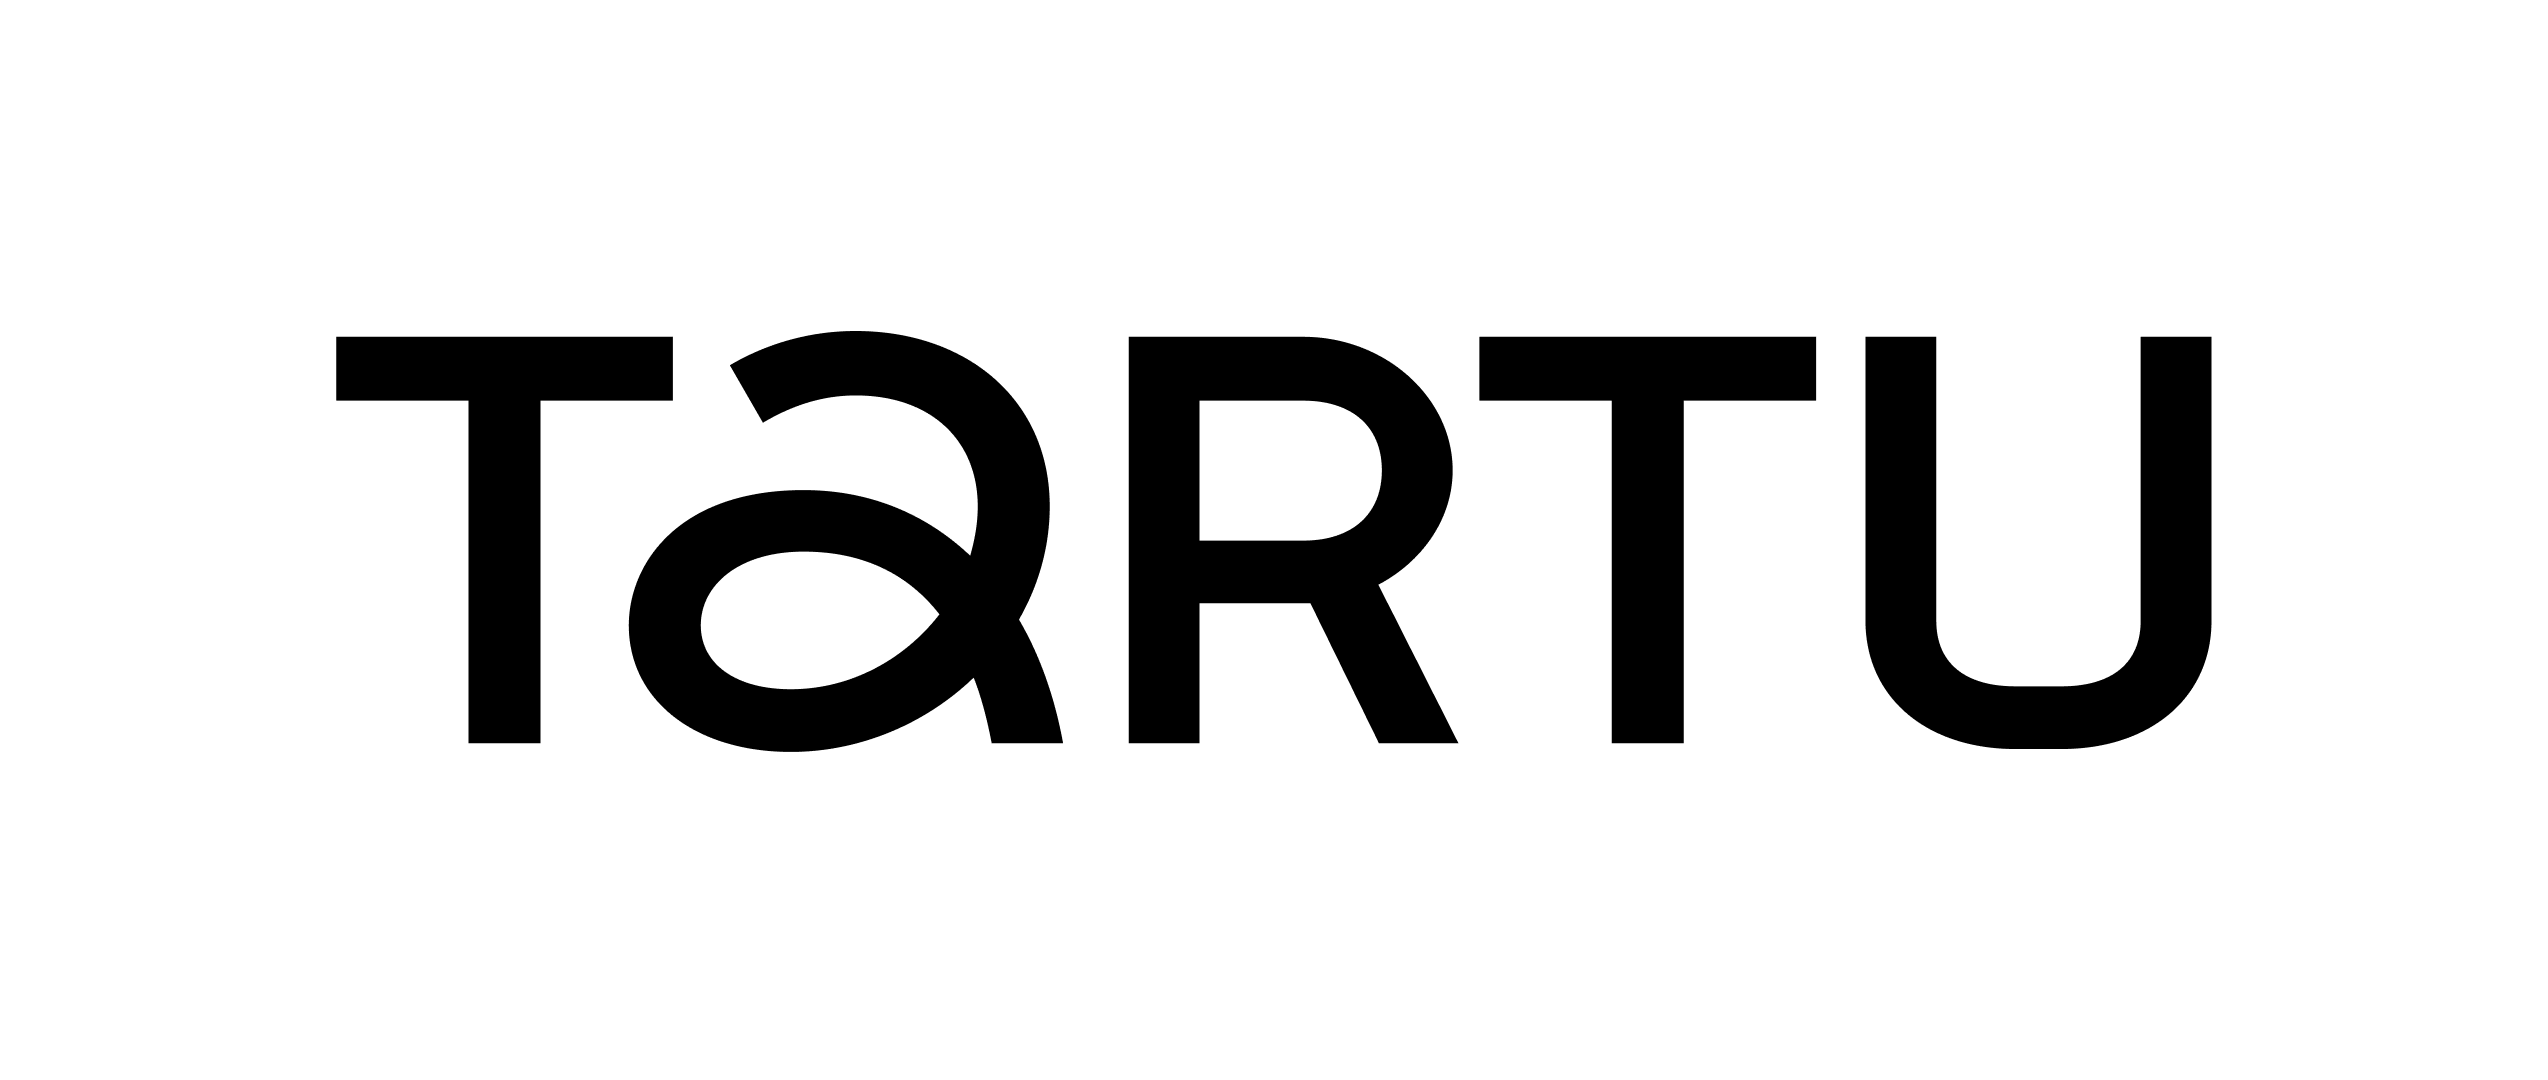 Tartu-logo-black_RGB